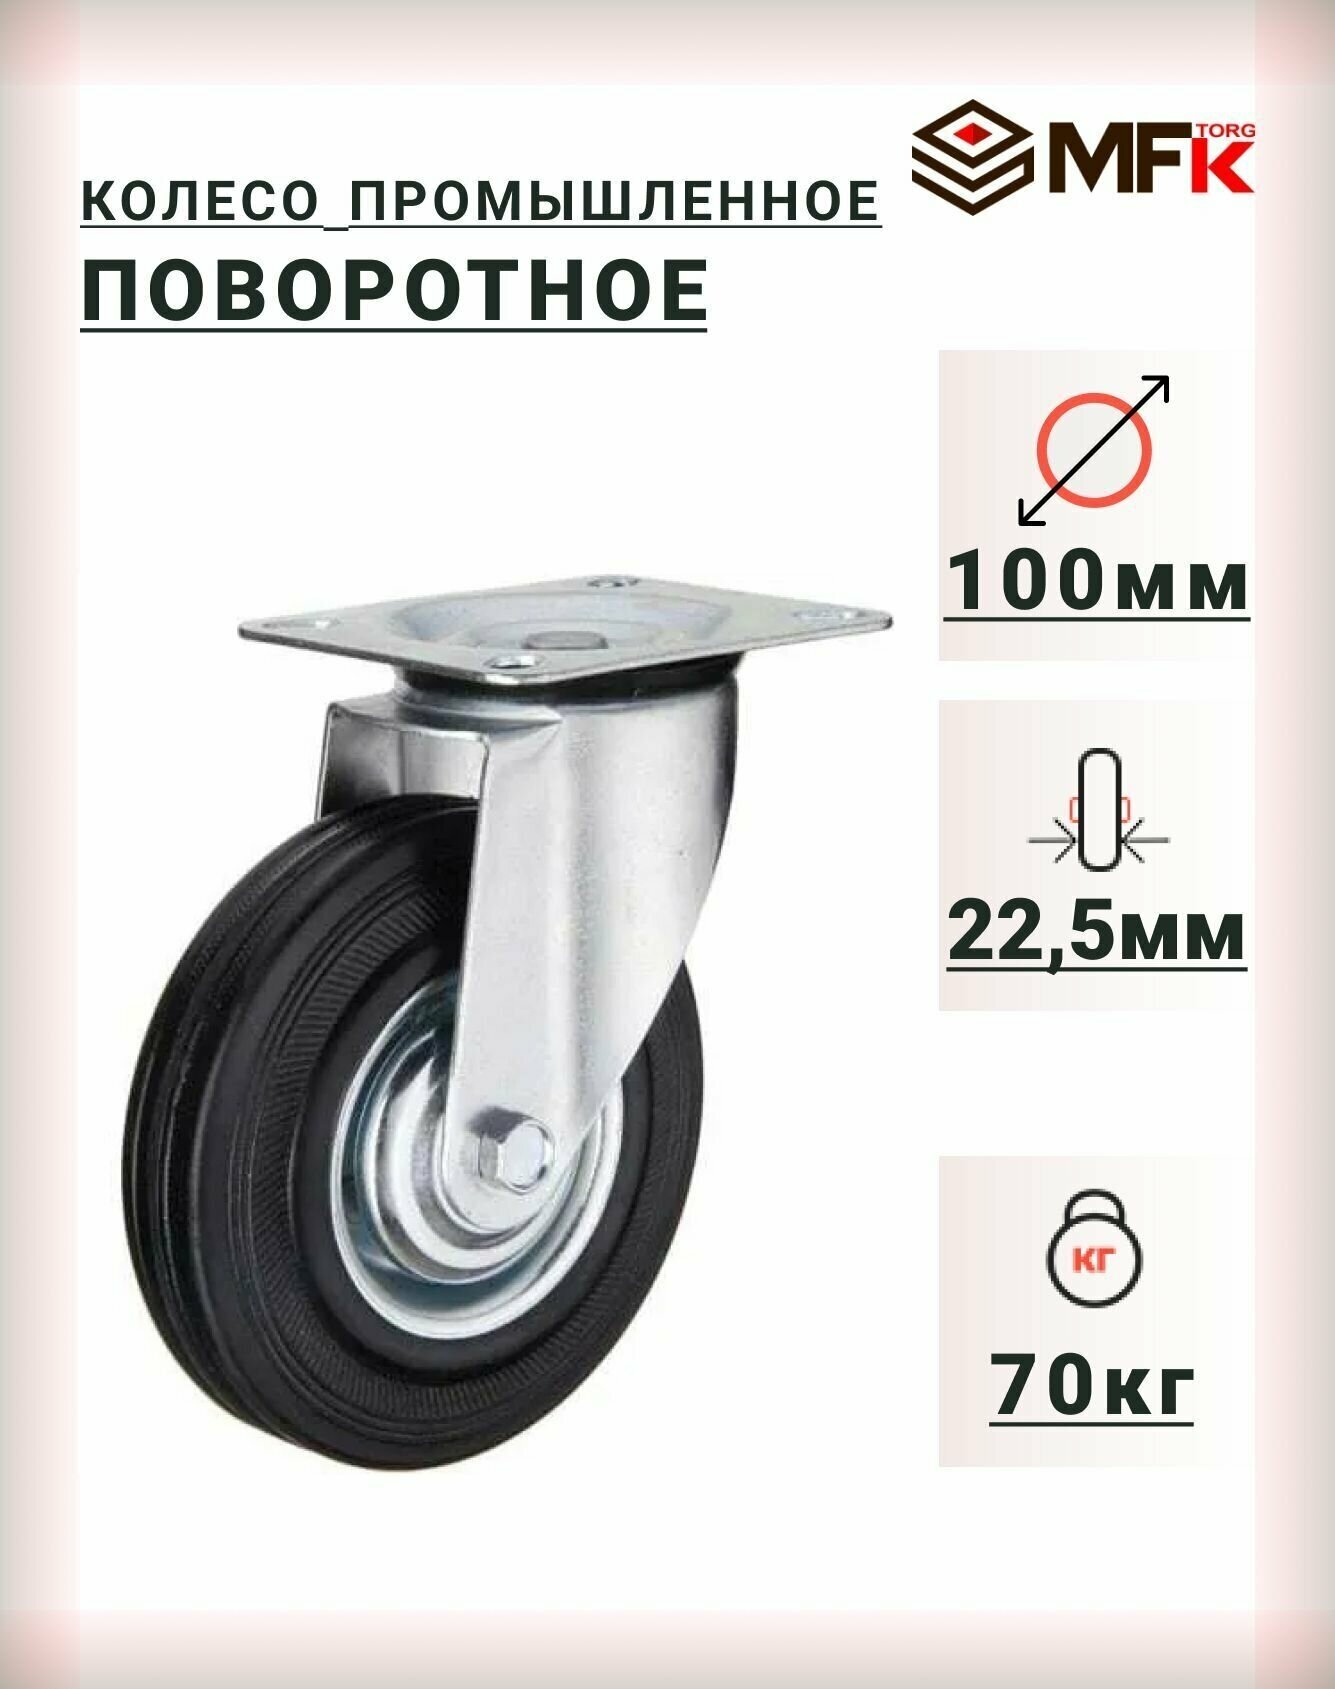 Колесо промышленное поворотное 100мм (SC42) для тележек мфк-торг 4001100, 4 шт. - фотография № 1